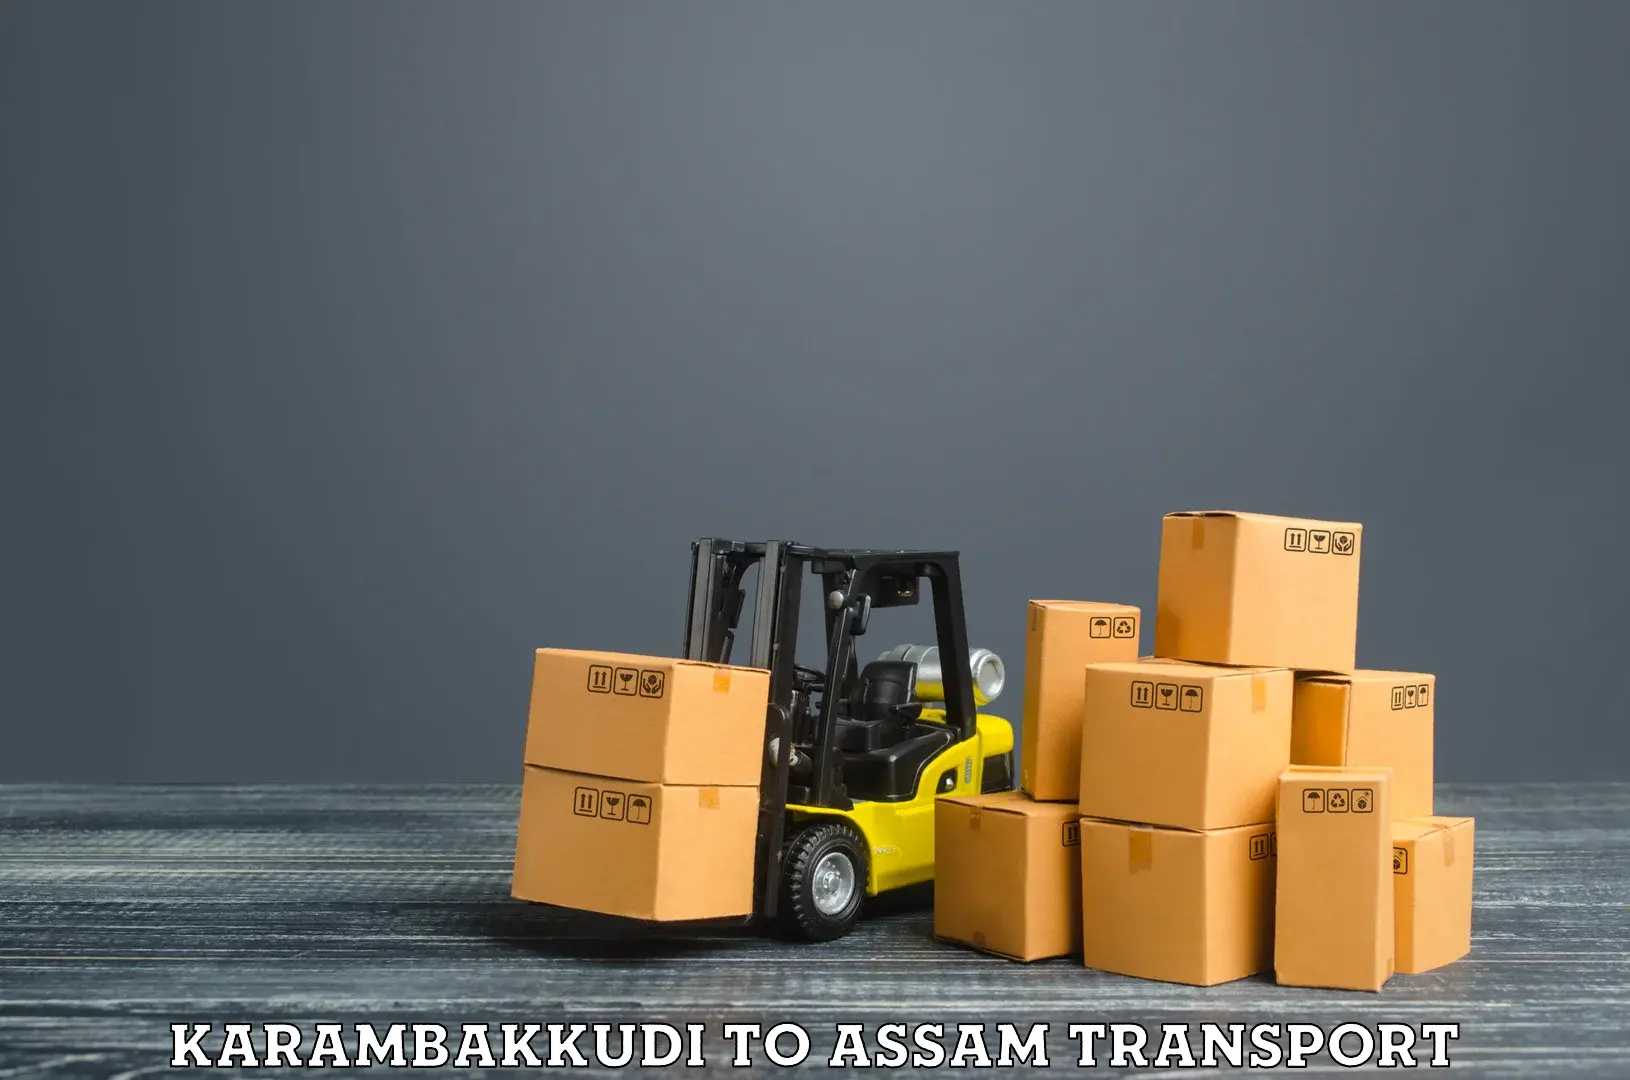 Air cargo transport services Karambakkudi to Kampur